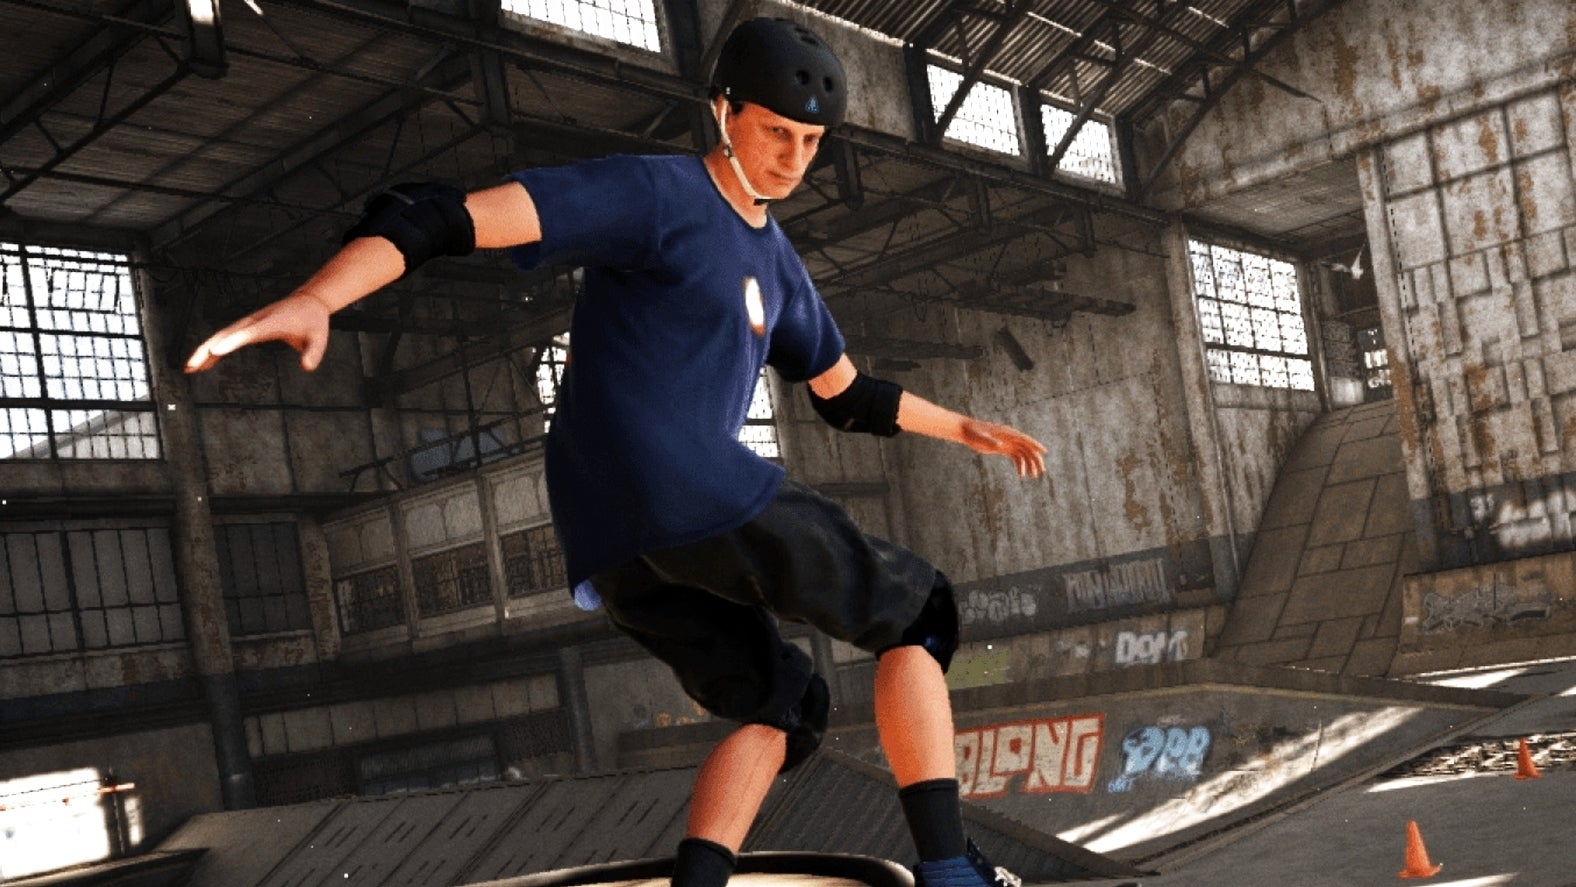 Bilder zu Tony Hawk's Pro Skater 1+2 grindet Ende Juni auf die Switch